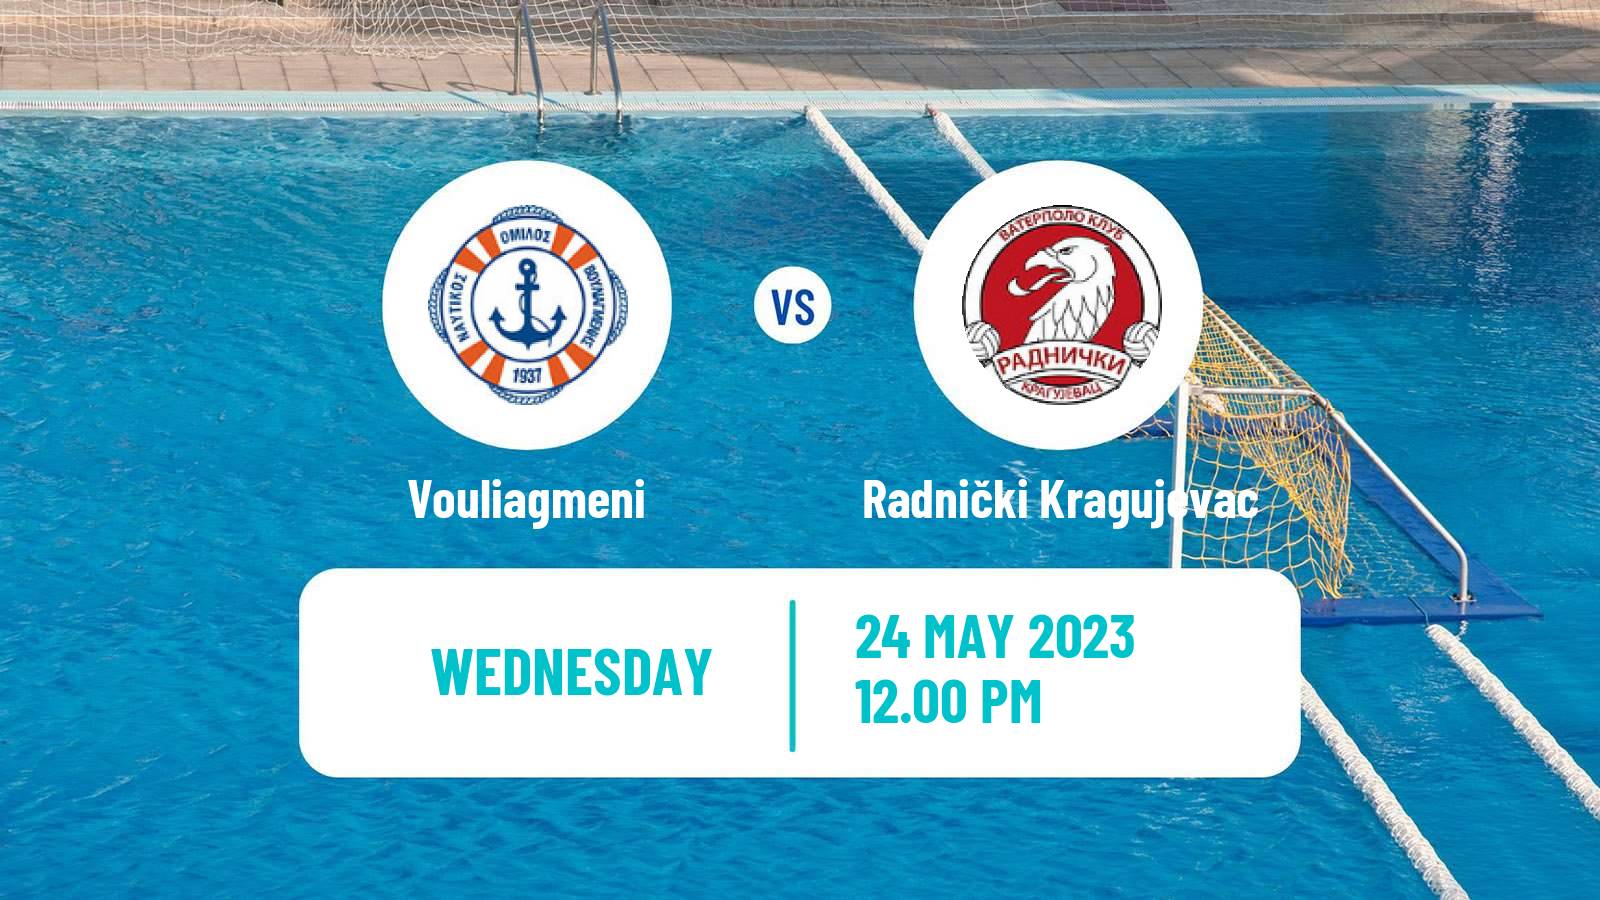 Water polo Champions League Water Polo Vouliagmeni - Radnički Kragujevac